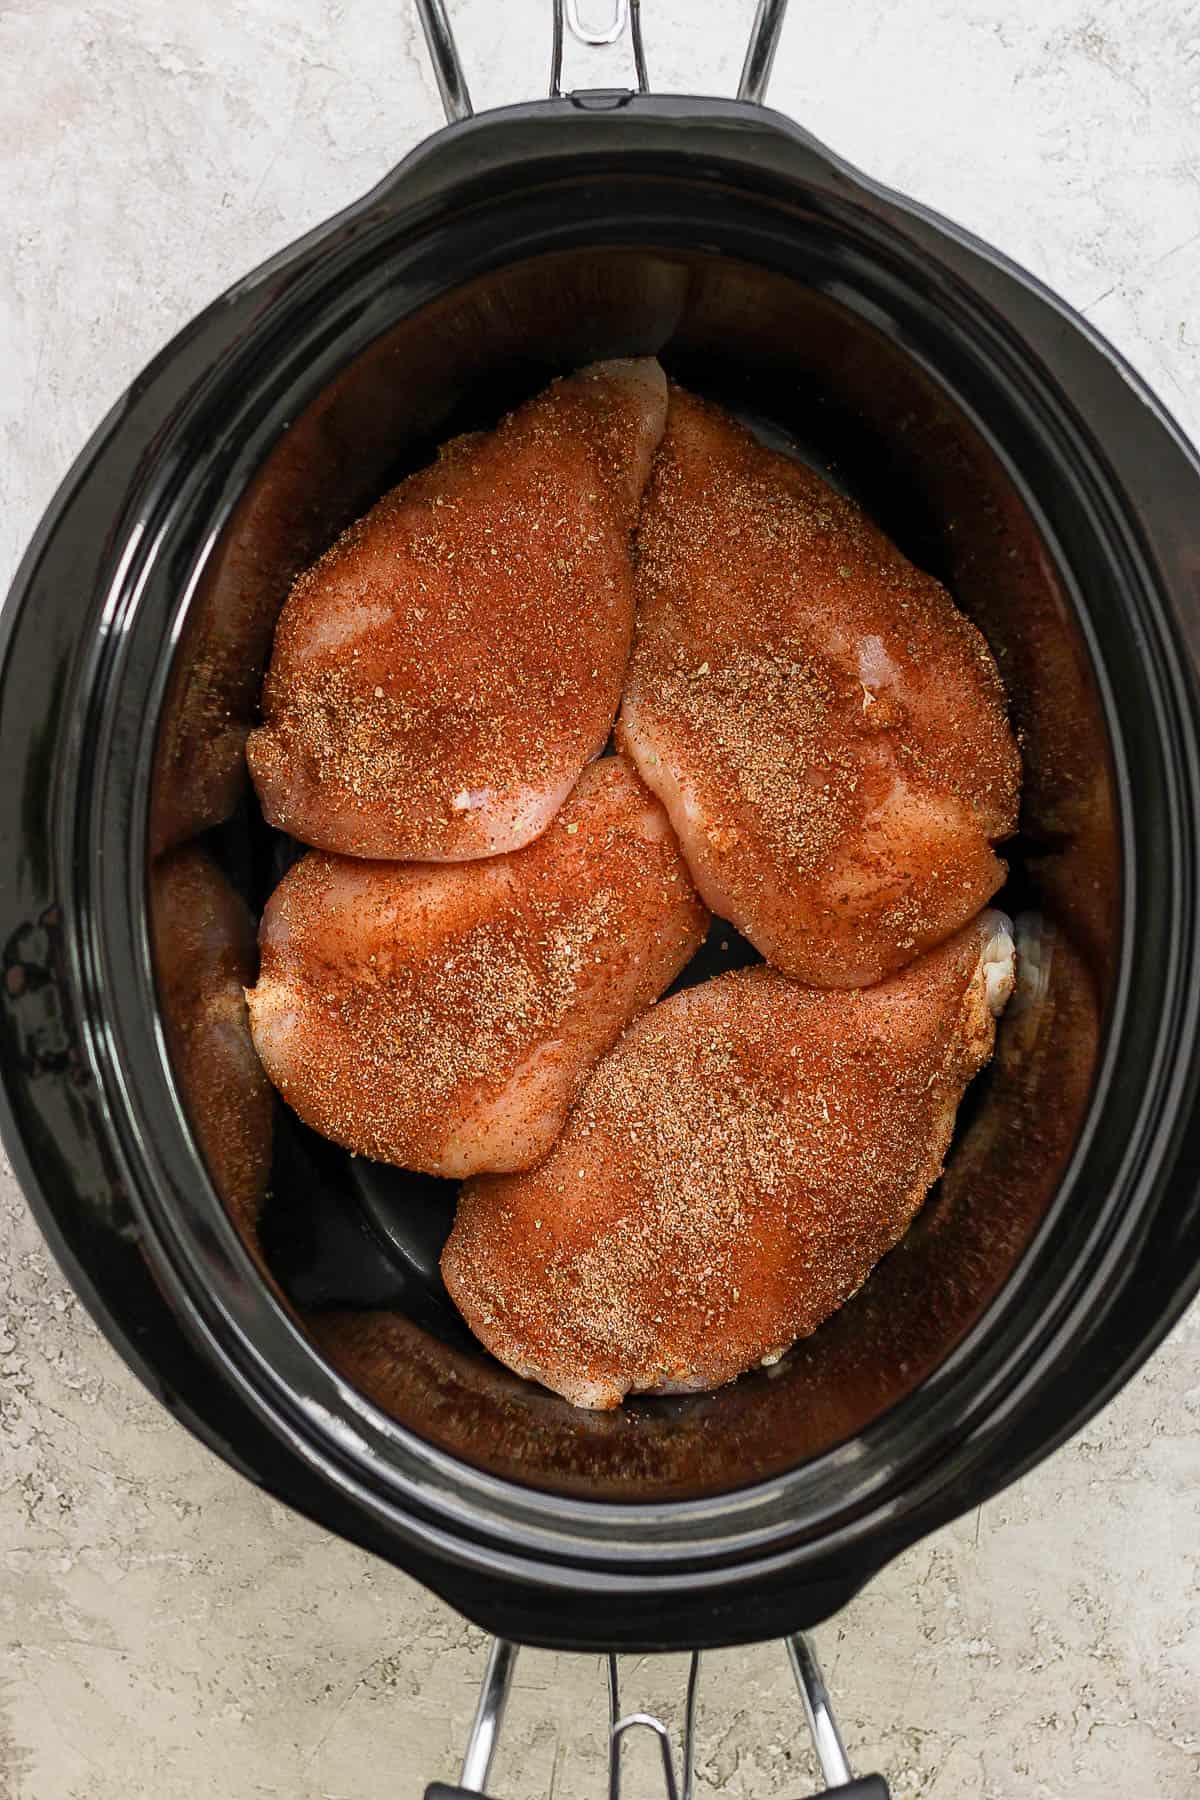 Seasoned chicken breast in a slow cooker.